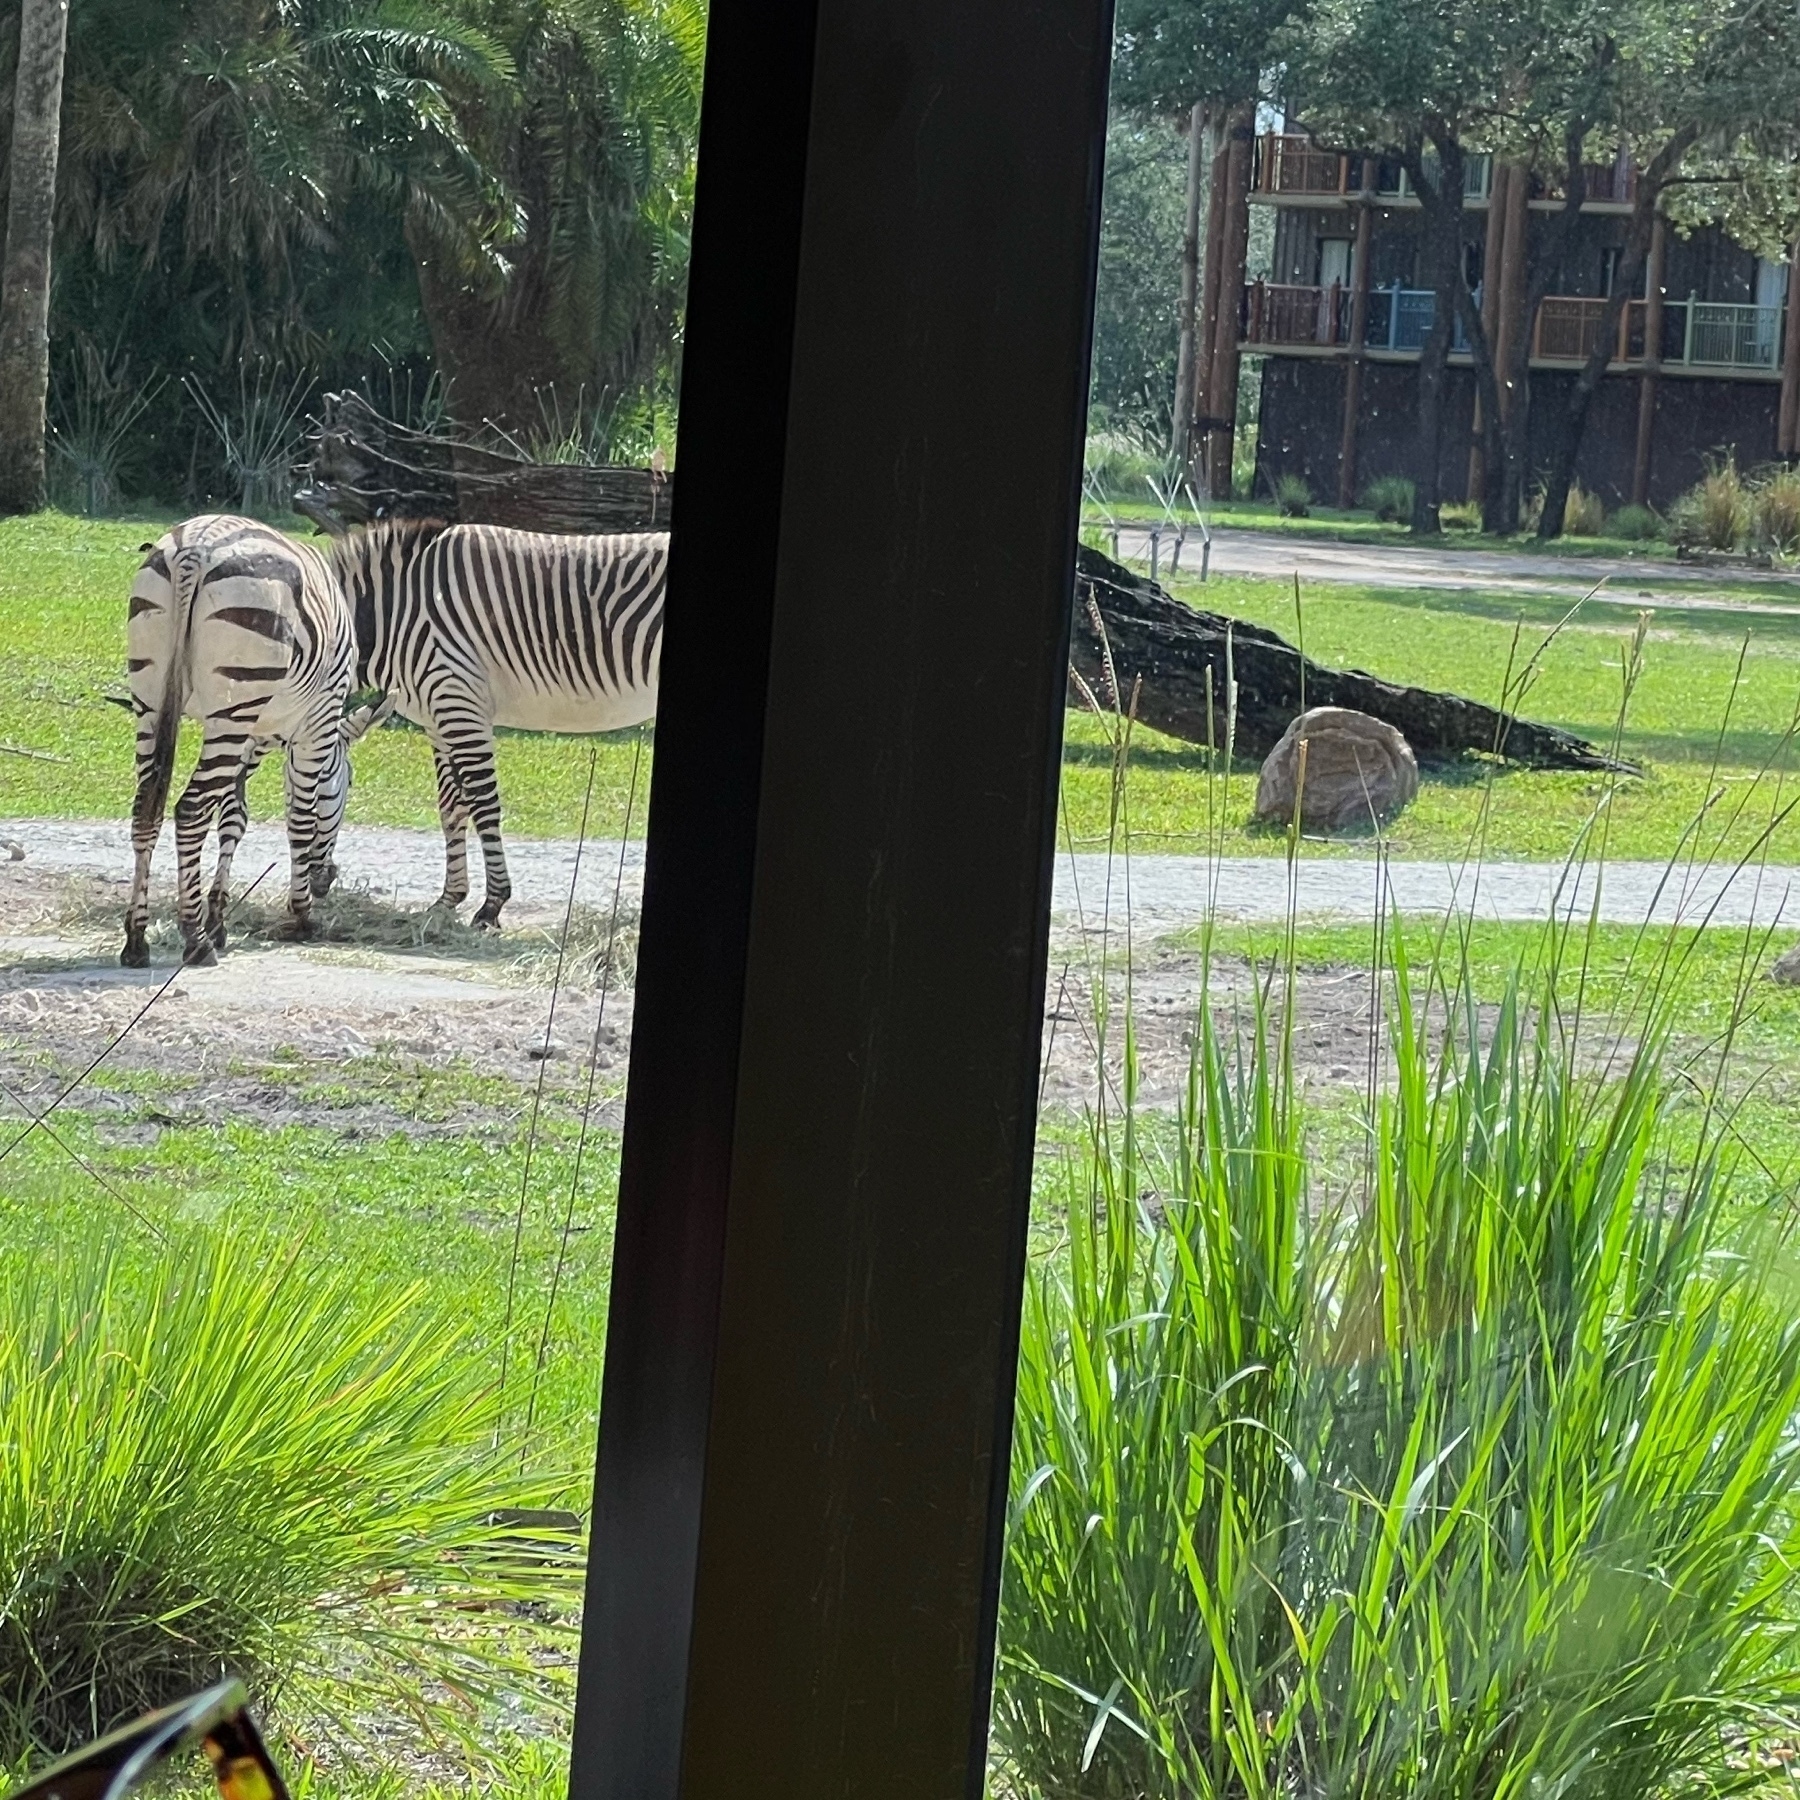 2 Zebra butts outside a window